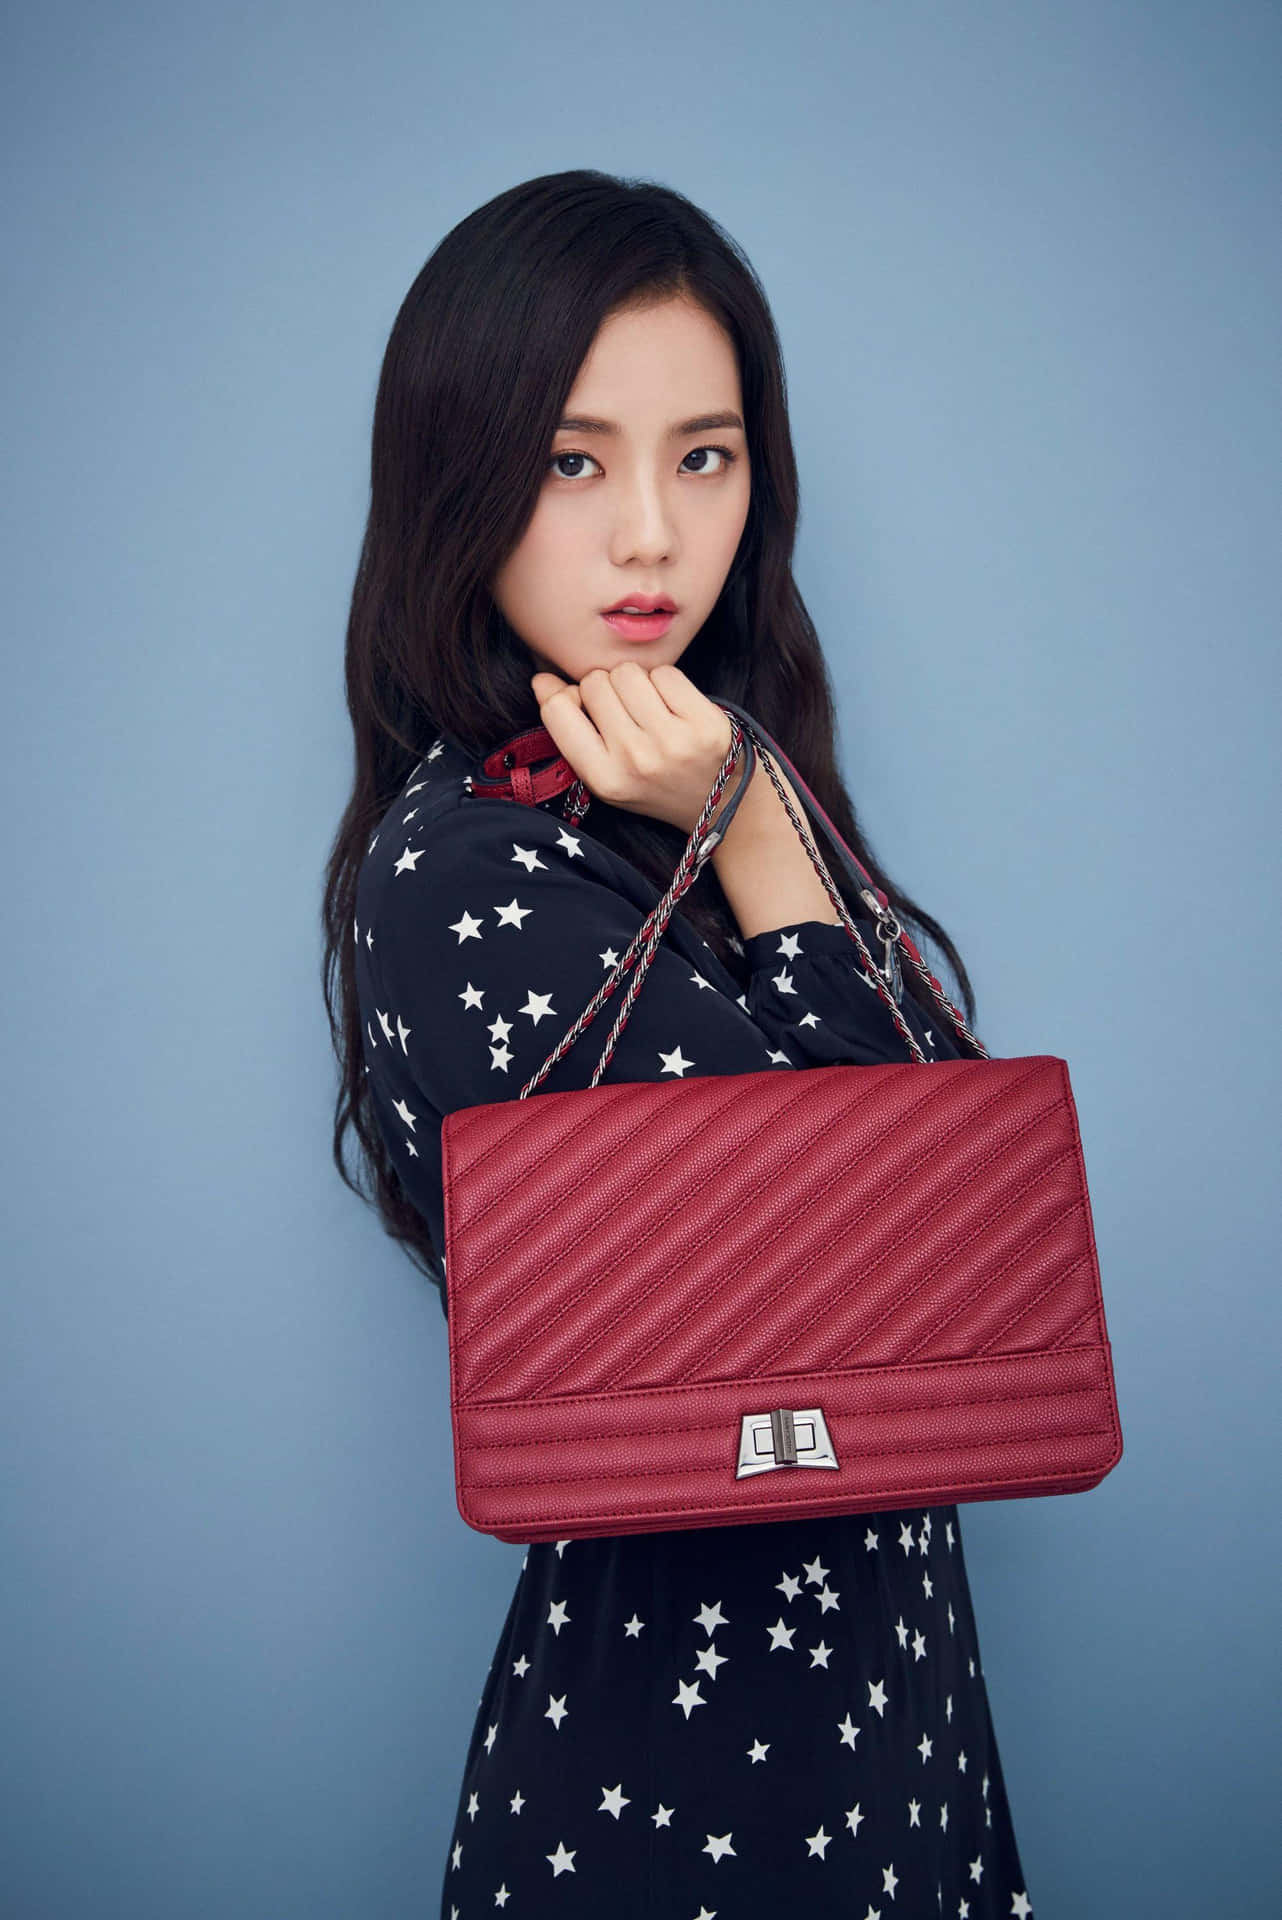 Jisoo Blackpink Red Bag Model Wallpaper